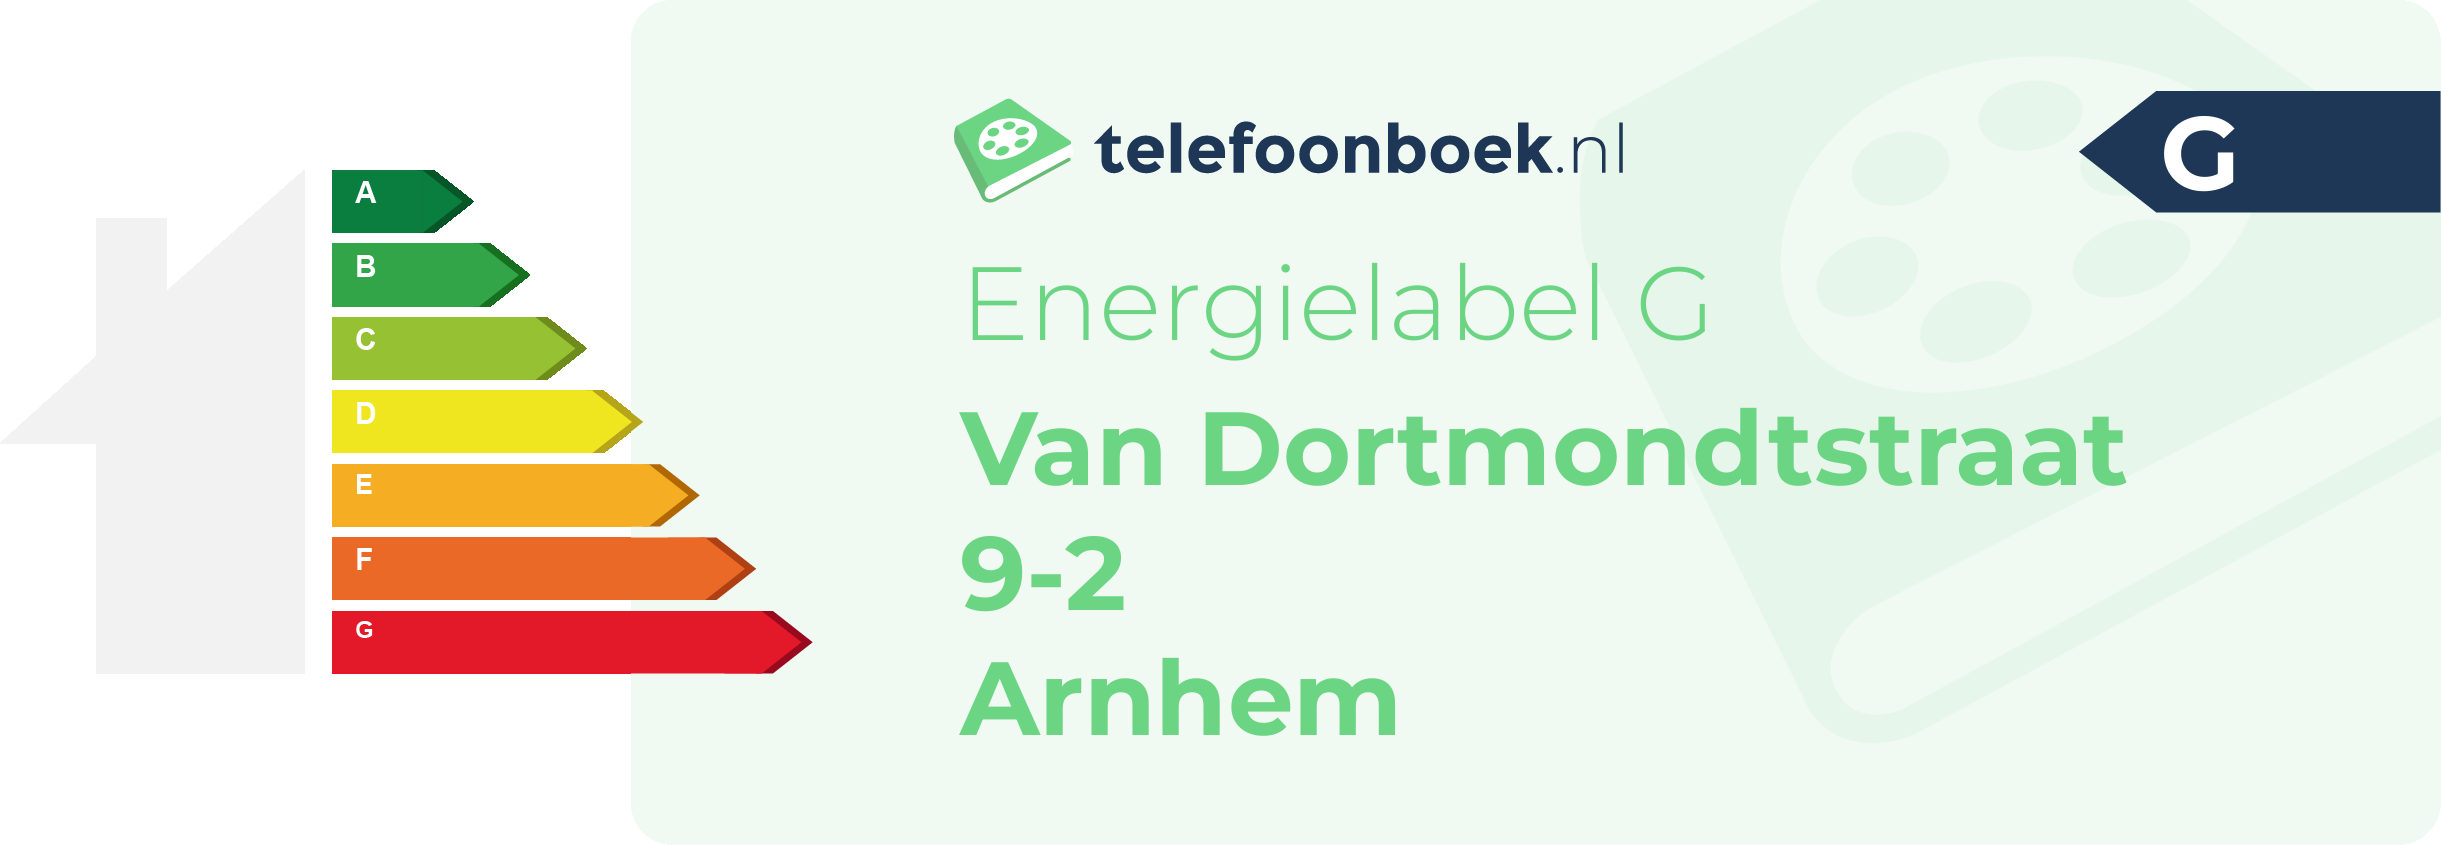 Energielabel Van Dortmondtstraat 9-2 Arnhem